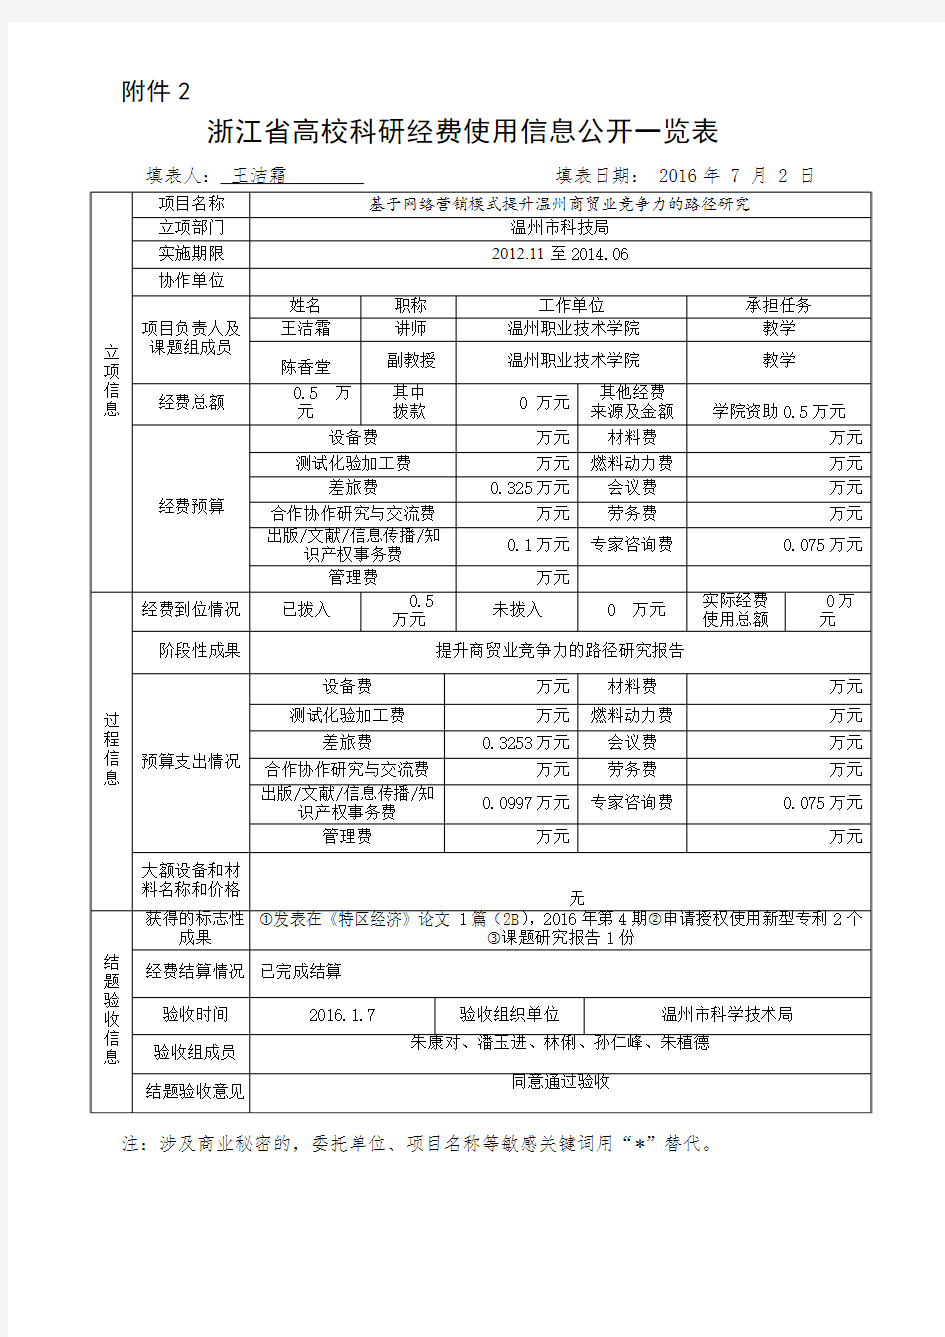 浙江高校科研经费使用信息公开一览表-温州职业技术学院